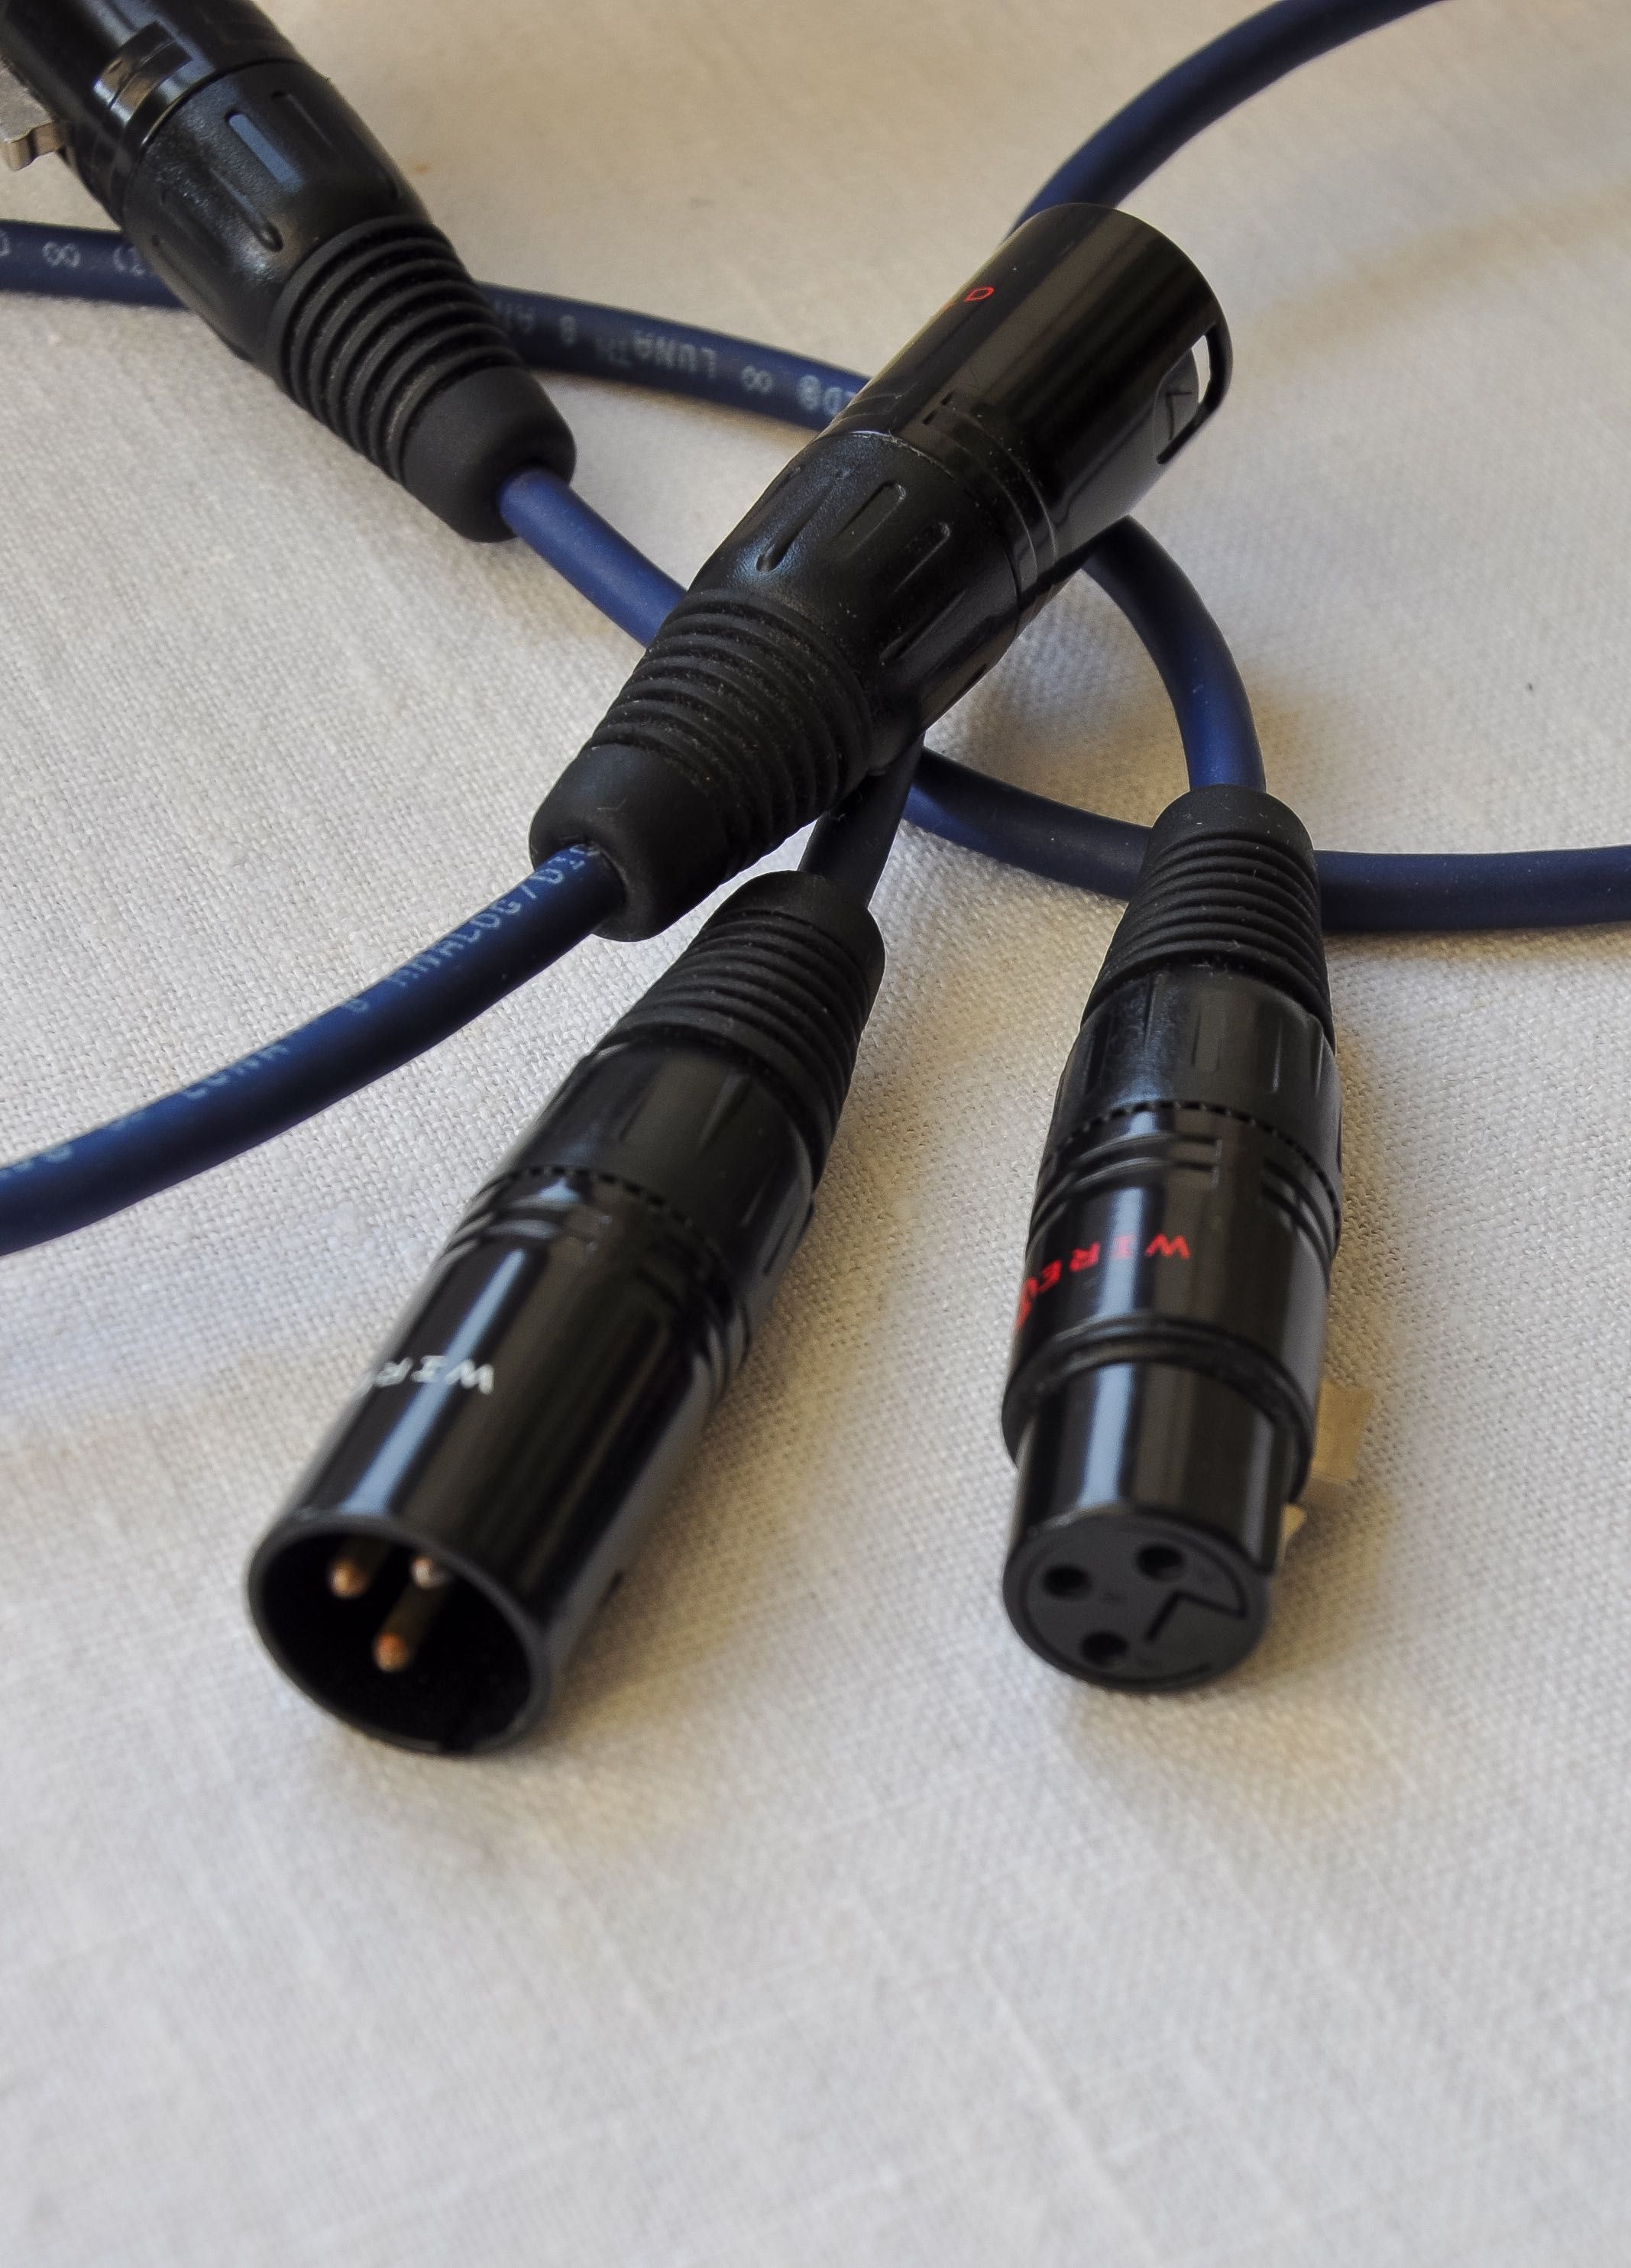 S.M.S.L. M300 DAC + S.M.S.L. SP400 wzmacniacz słuchawkowy + kable